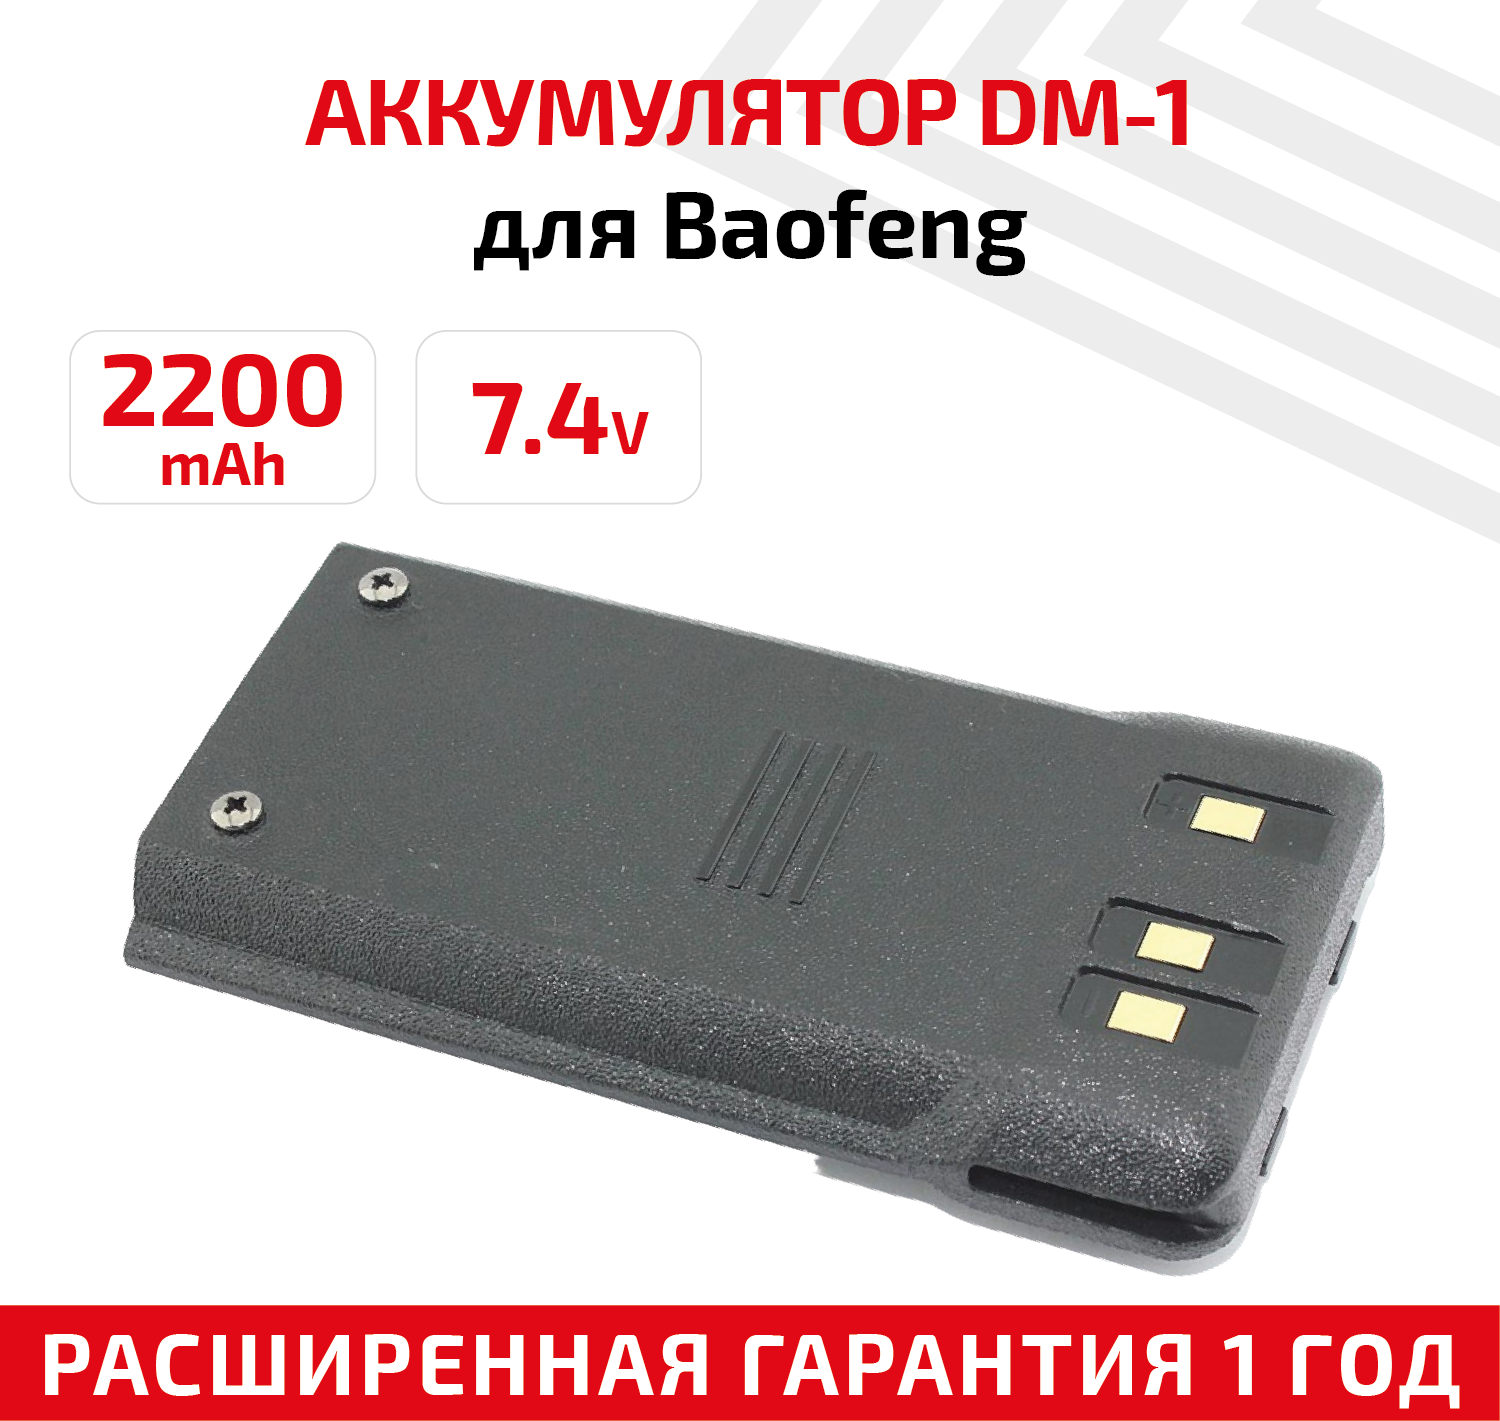 Аккумулятор для раций Baofeng DM-1701 2200 мАч